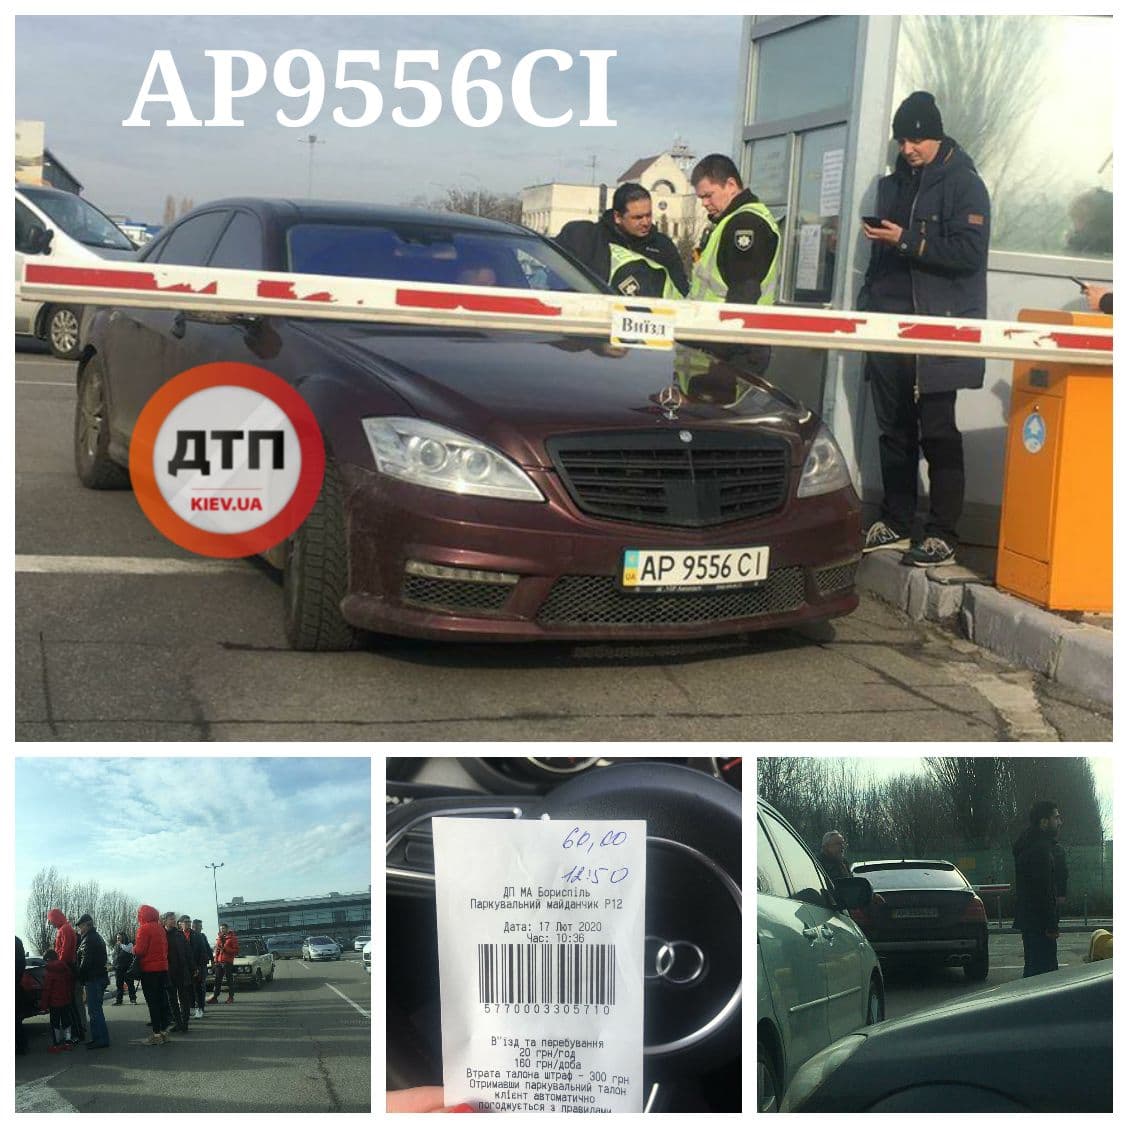 В аэропорту Борисполь водитель Mercedes устроил скандал на выезде с платной парковки: подробности